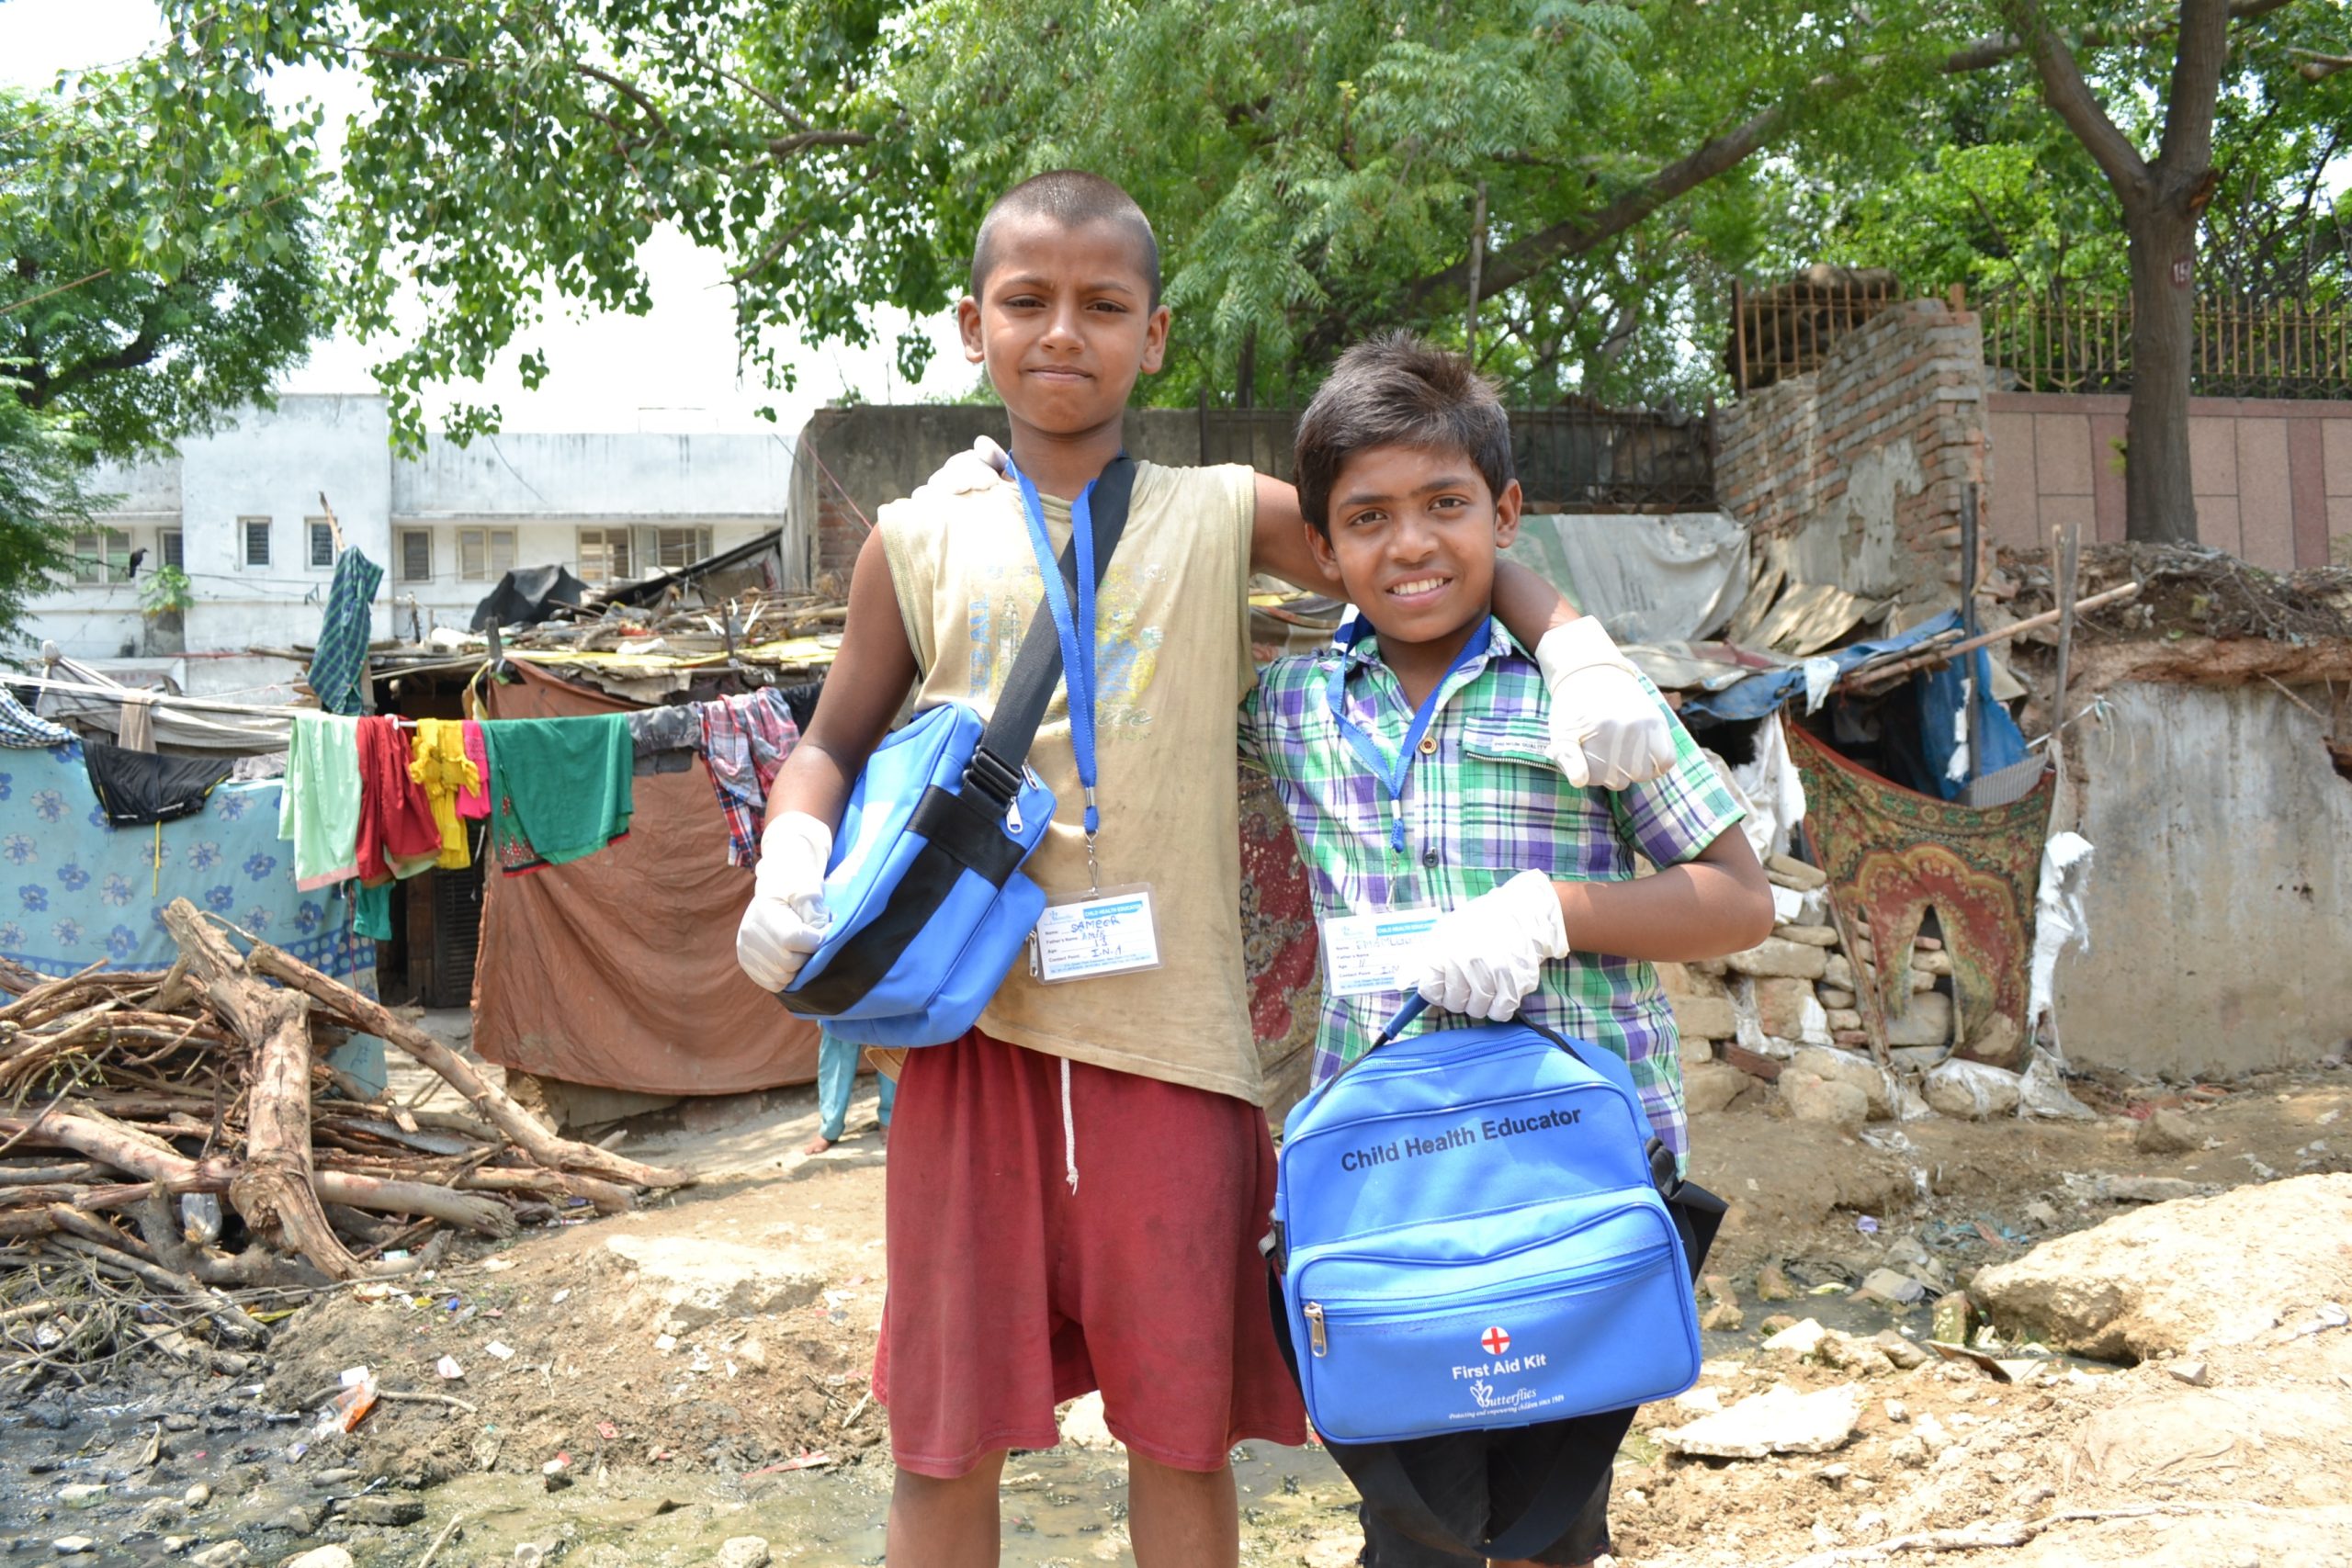 Die Straßenkinder in Delhi / Indien werden zu Gesundheitshelfer*innen ausgebildet.